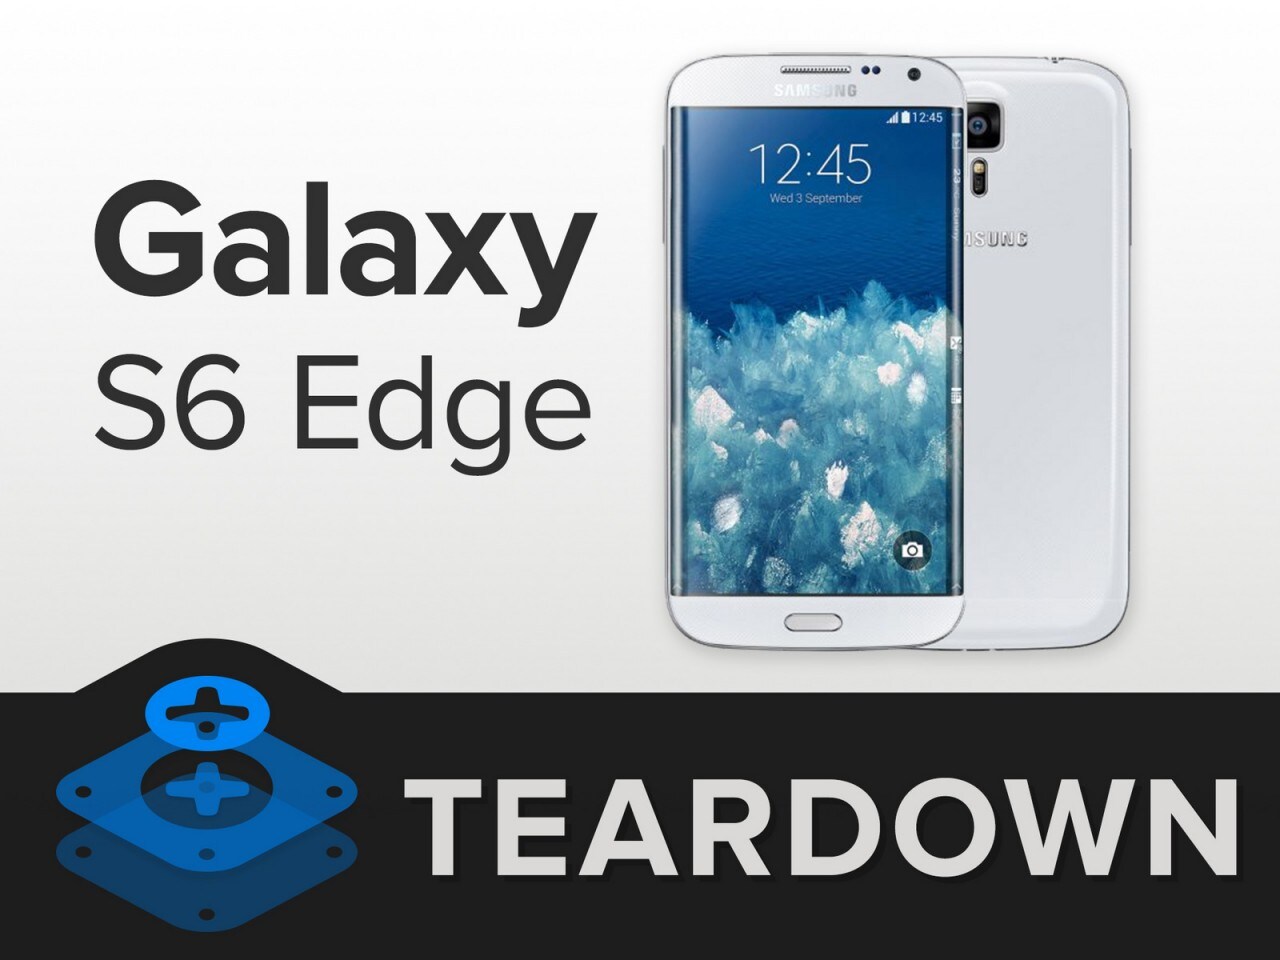 Mettetevi l'anima in pace: anche Galaxy S6 Edge è tosto da riparare